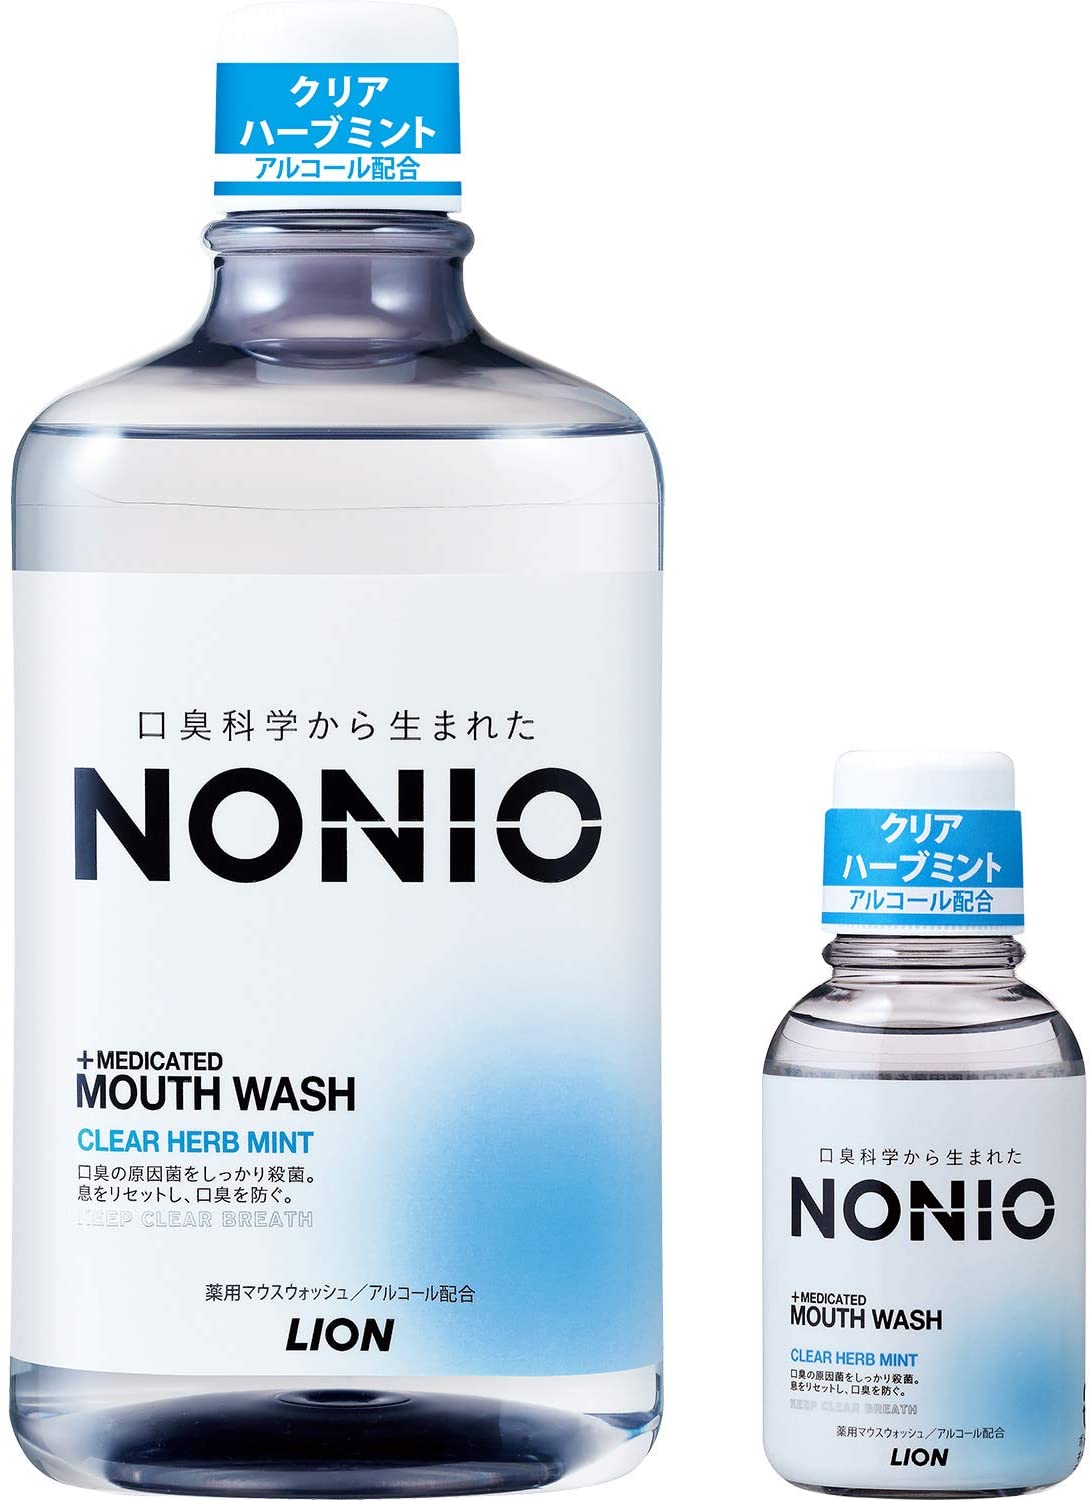 【大放出セール】 NONIO(ノニオ) 1,00 セット 洗口液 クリアハーブミント マウスウォッシュ [医薬部外品] その他